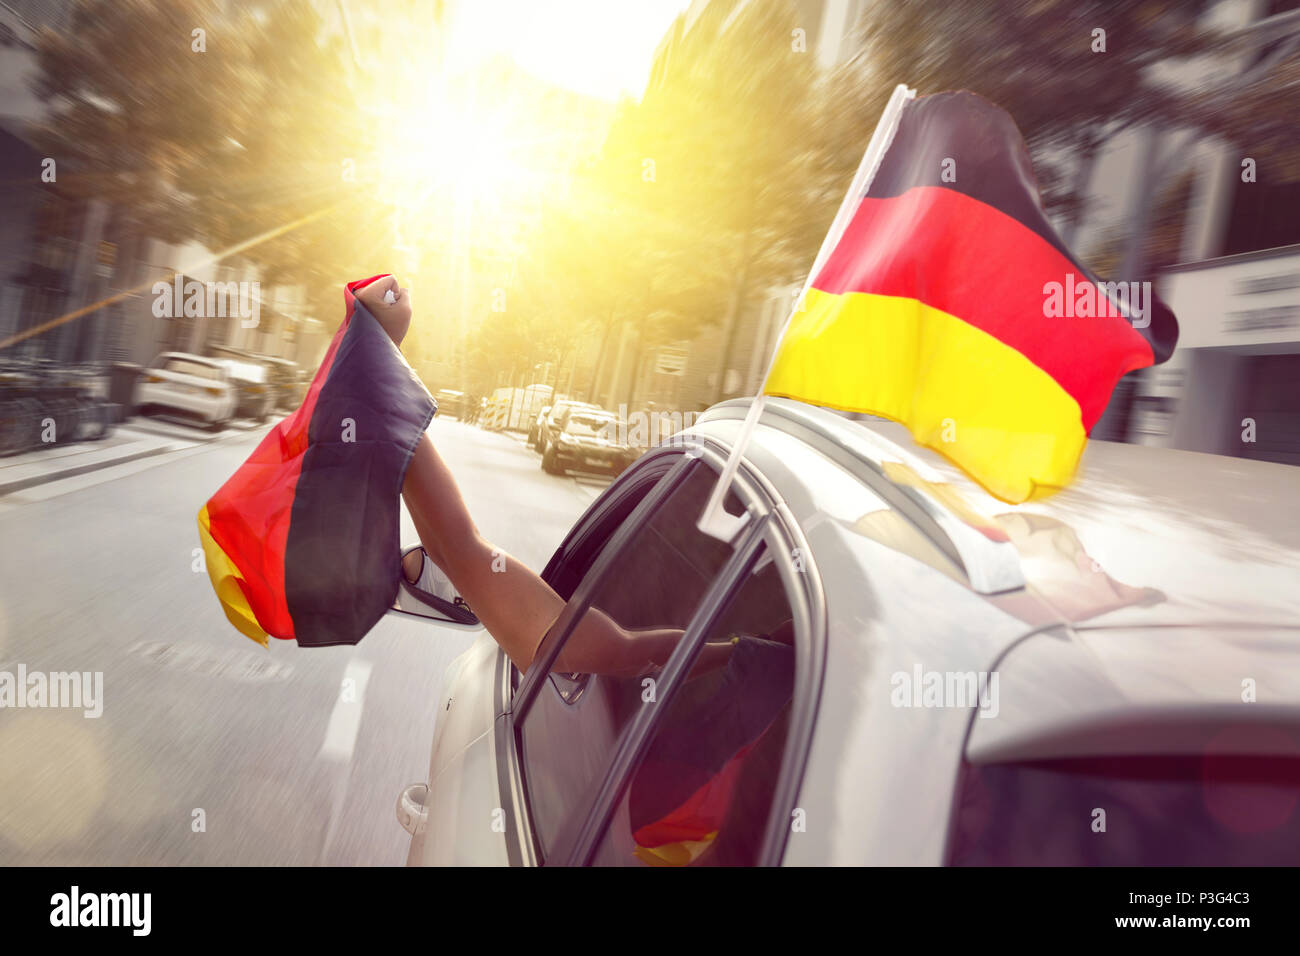 Voiture avec des drapeaux allemands de soufflage Banque D'Images